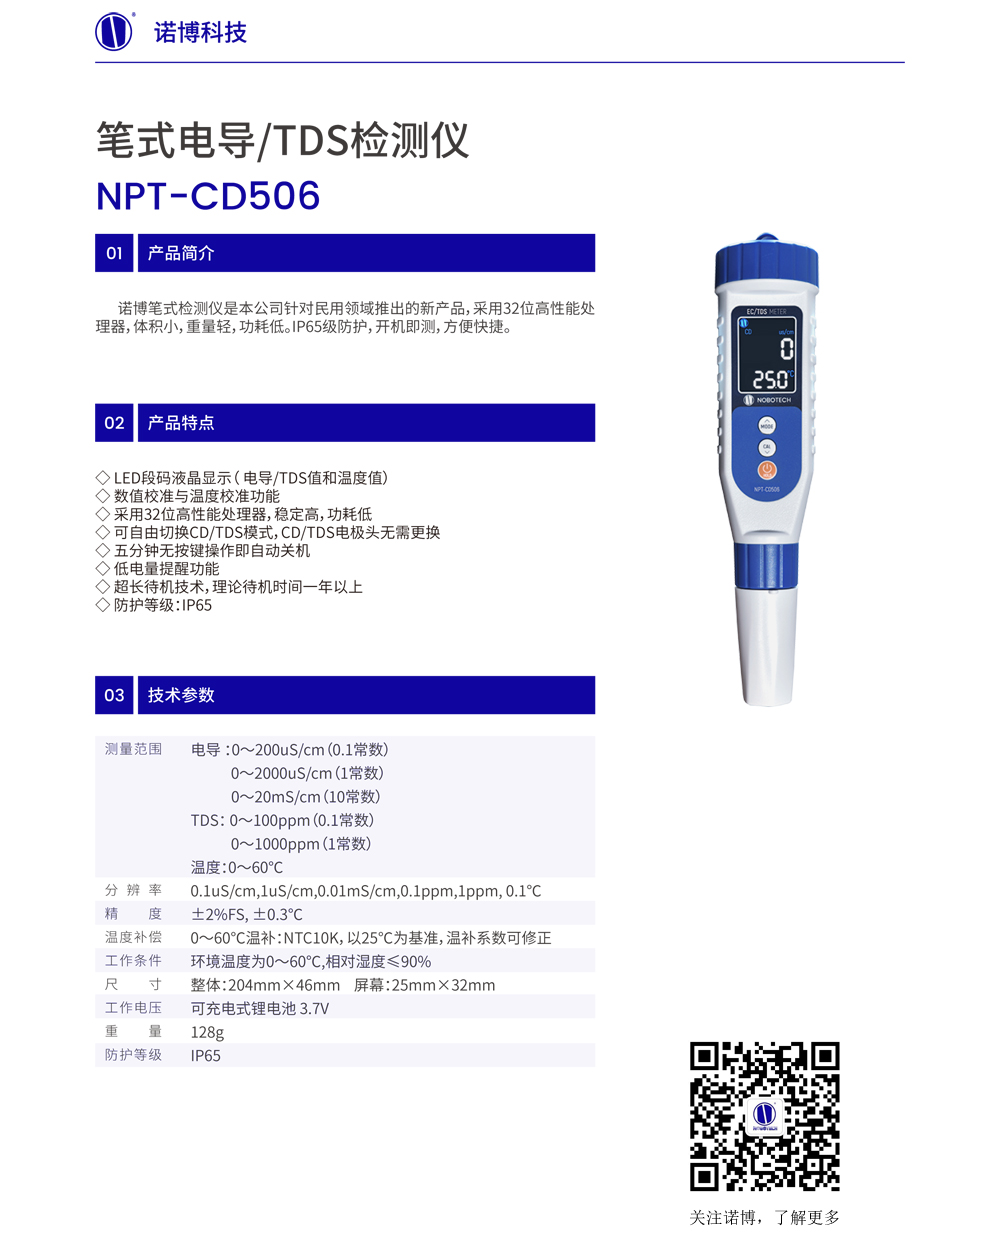 NPT-CD506絼.jpg